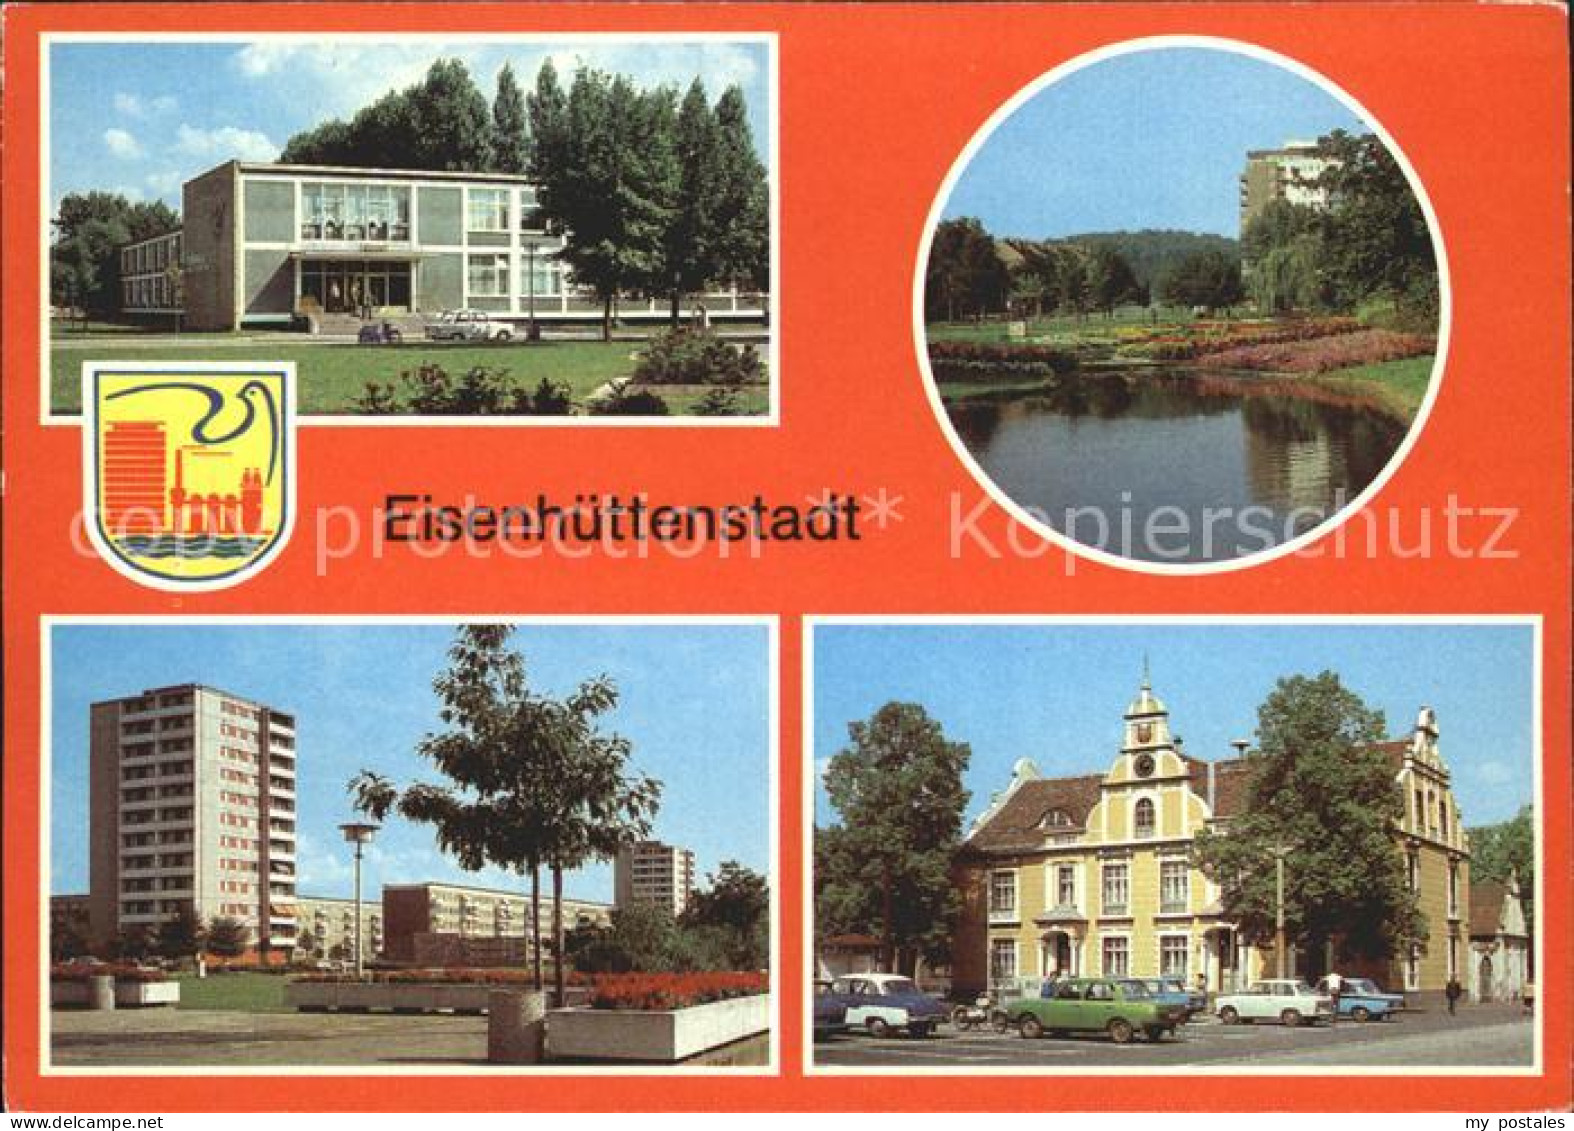 72286145 Eisenhuettenstadt Diehloer Strasse Lilienthal- Ring Marx- Engels- Platz - Eisenhüttenstadt